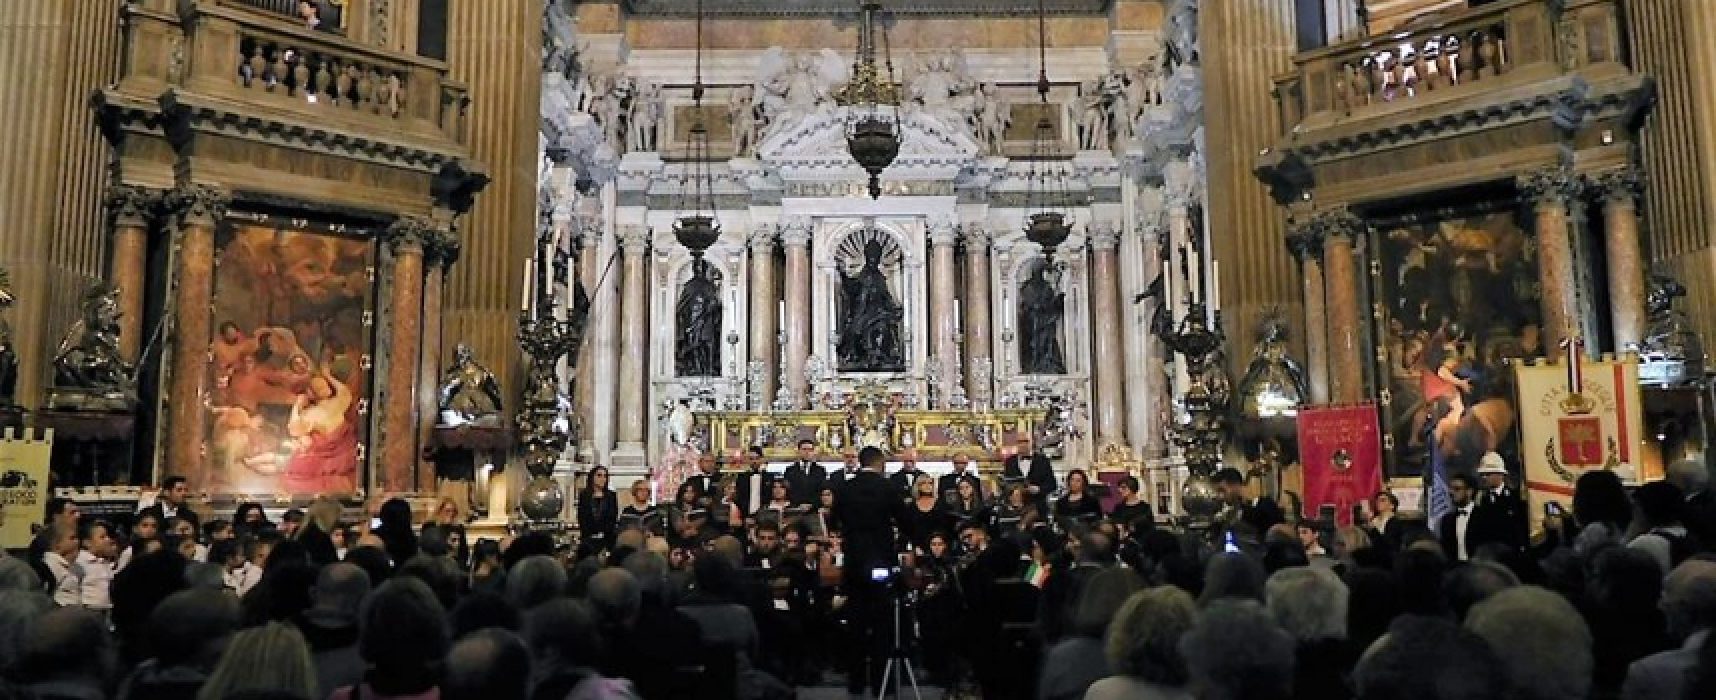 Club per l’Unesco Bisceglie, concerto dei Diritti Umani nella Real Cappella a Napoli